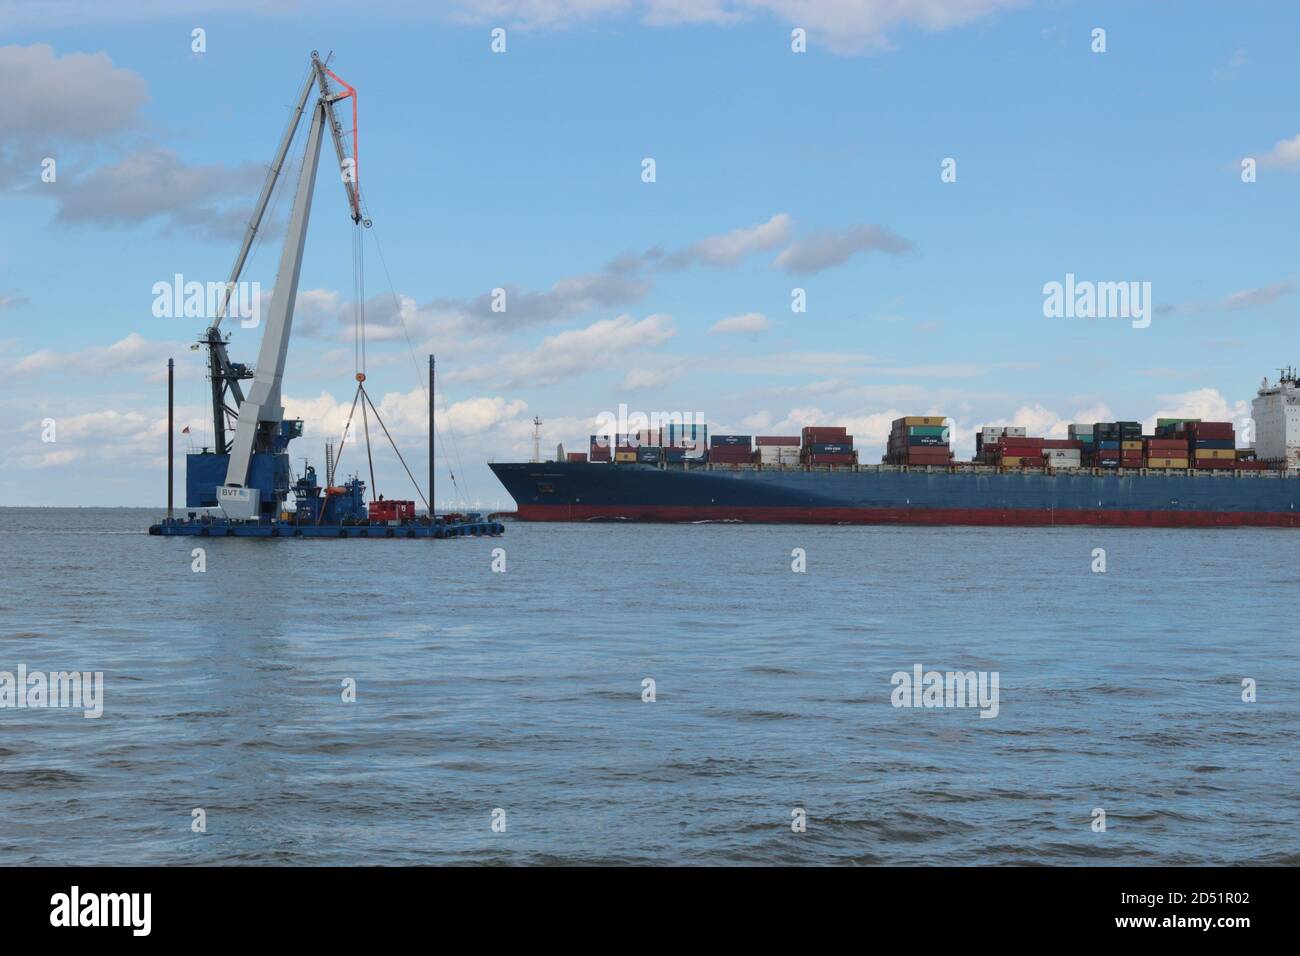 Ein Arbeitsschiff und ein Containerschiff, das bei Flut an der Elbmündung vorbeifährt. Hier mündet die Elbe in die Nordsee. Cuxhaven, Deutschland. Stockfoto